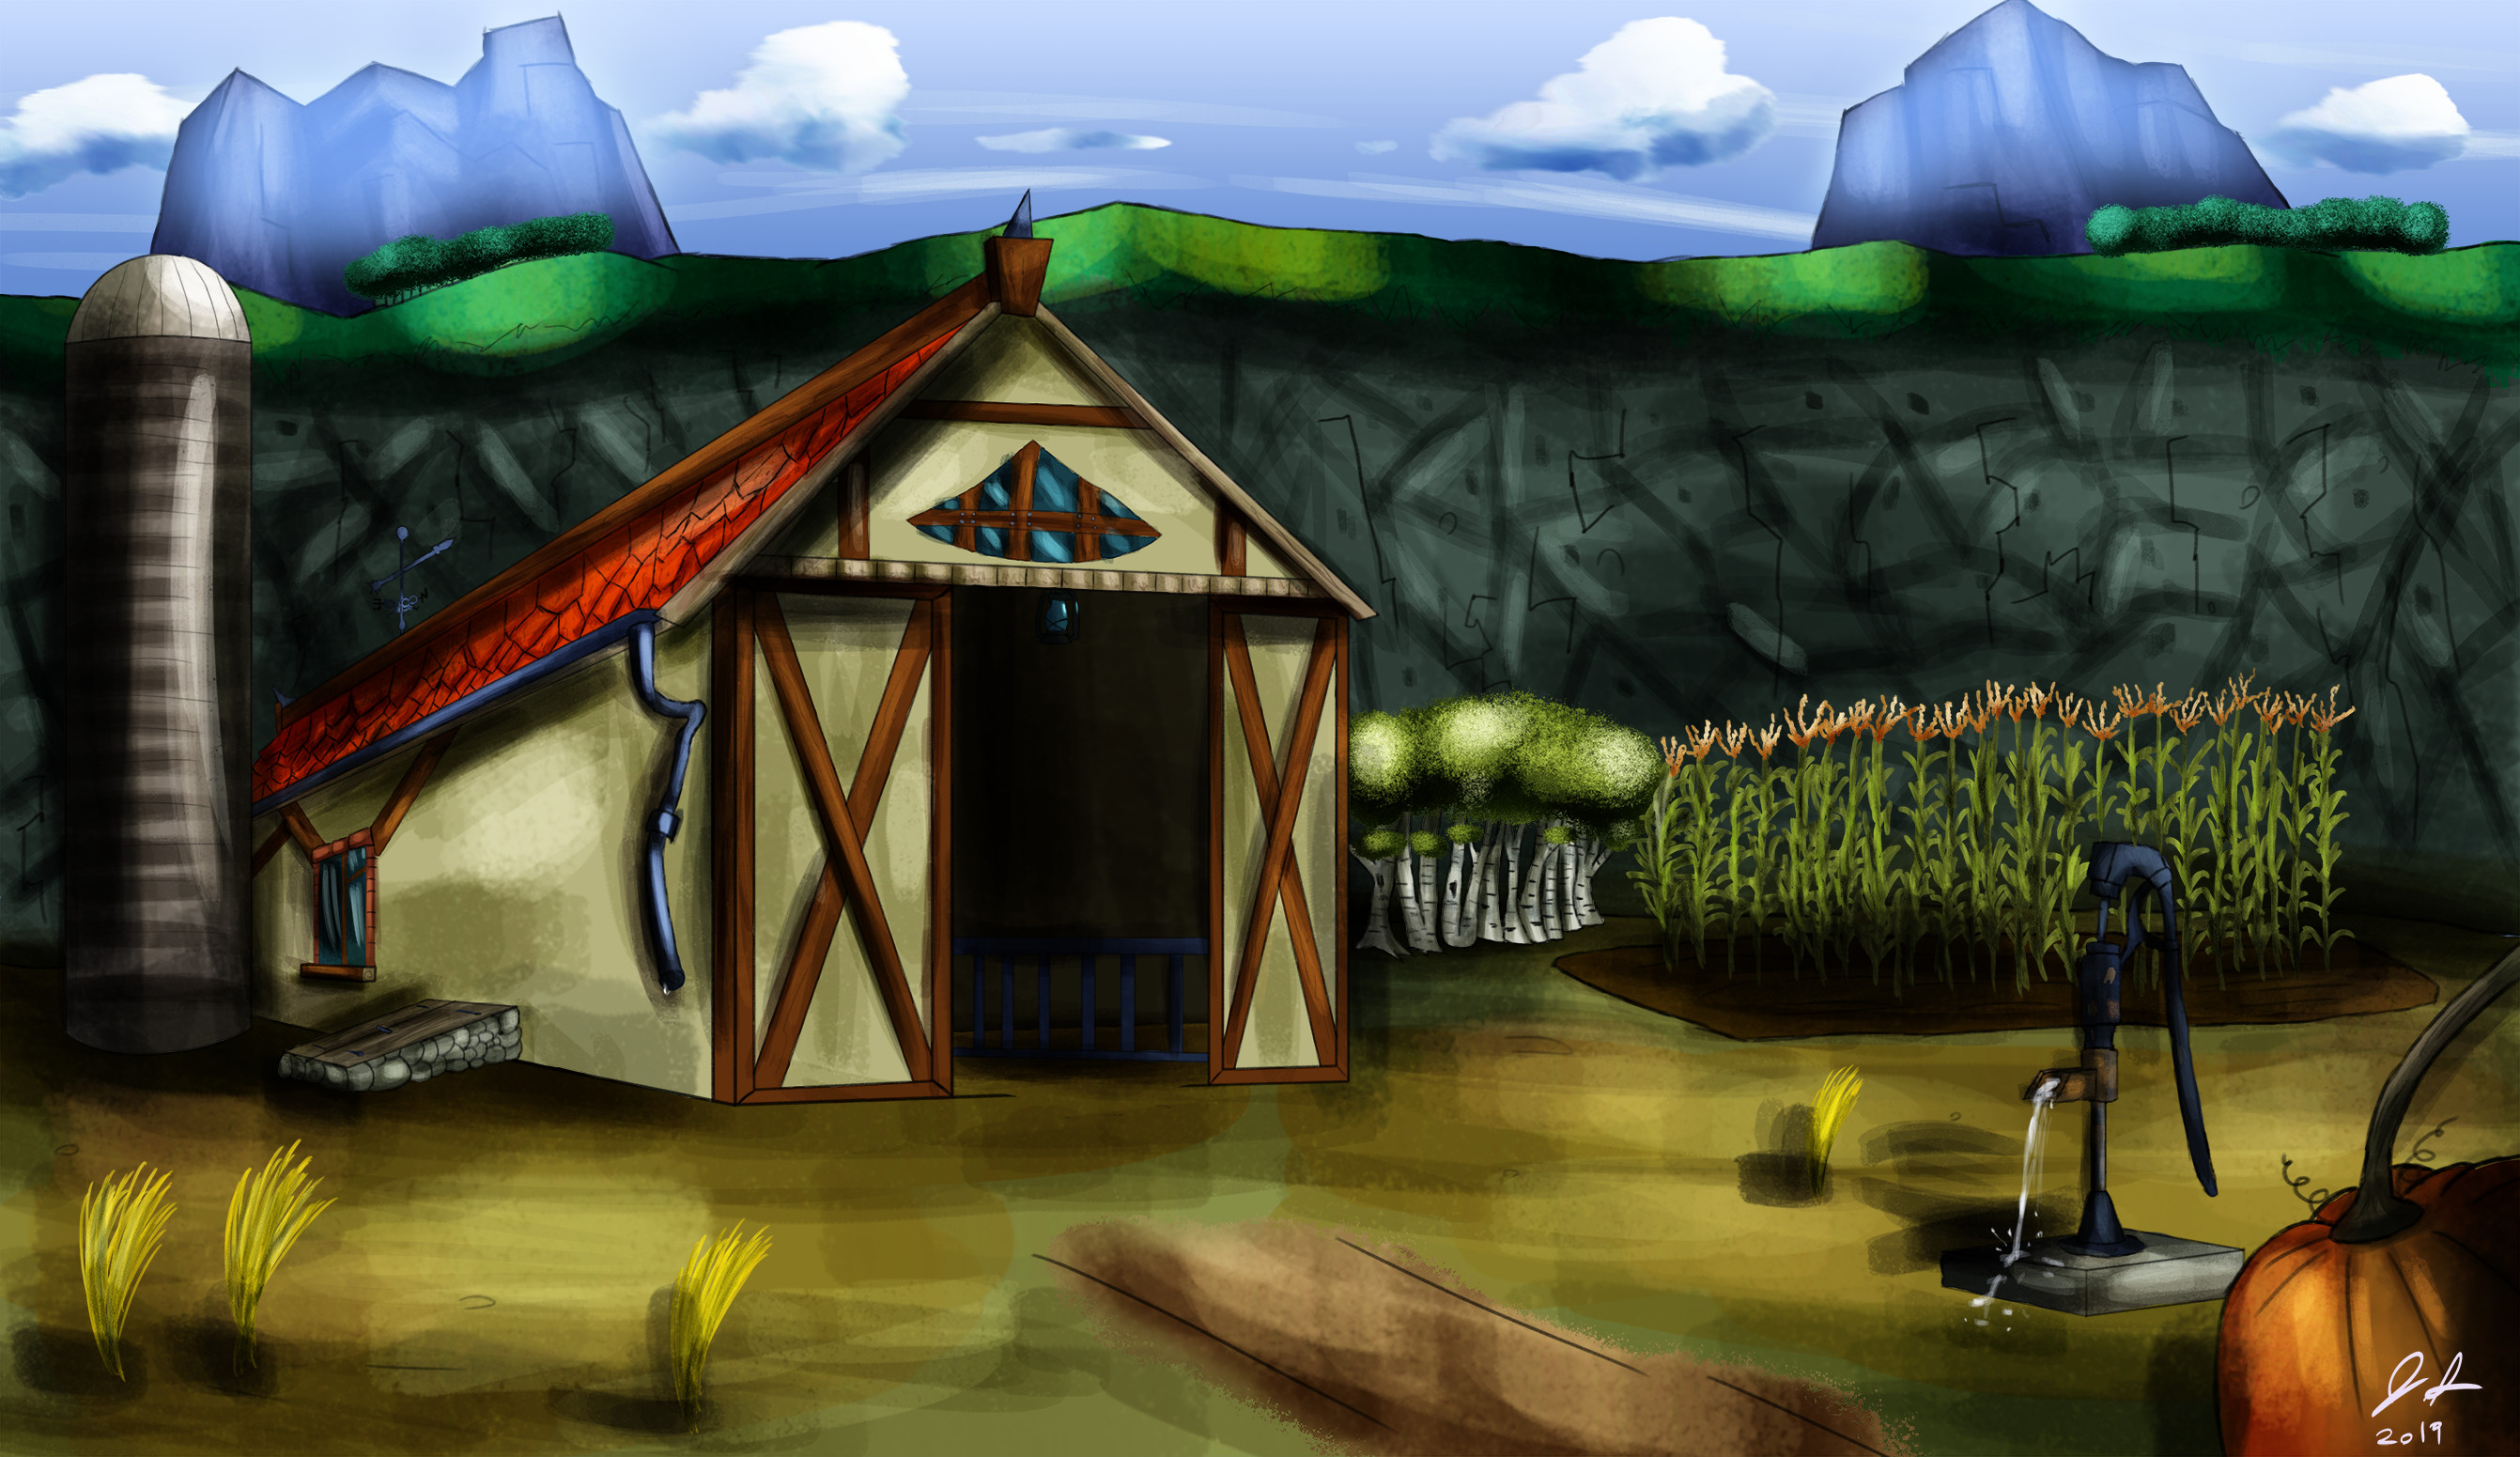 The barn. Every old cartoon had a funny farm.